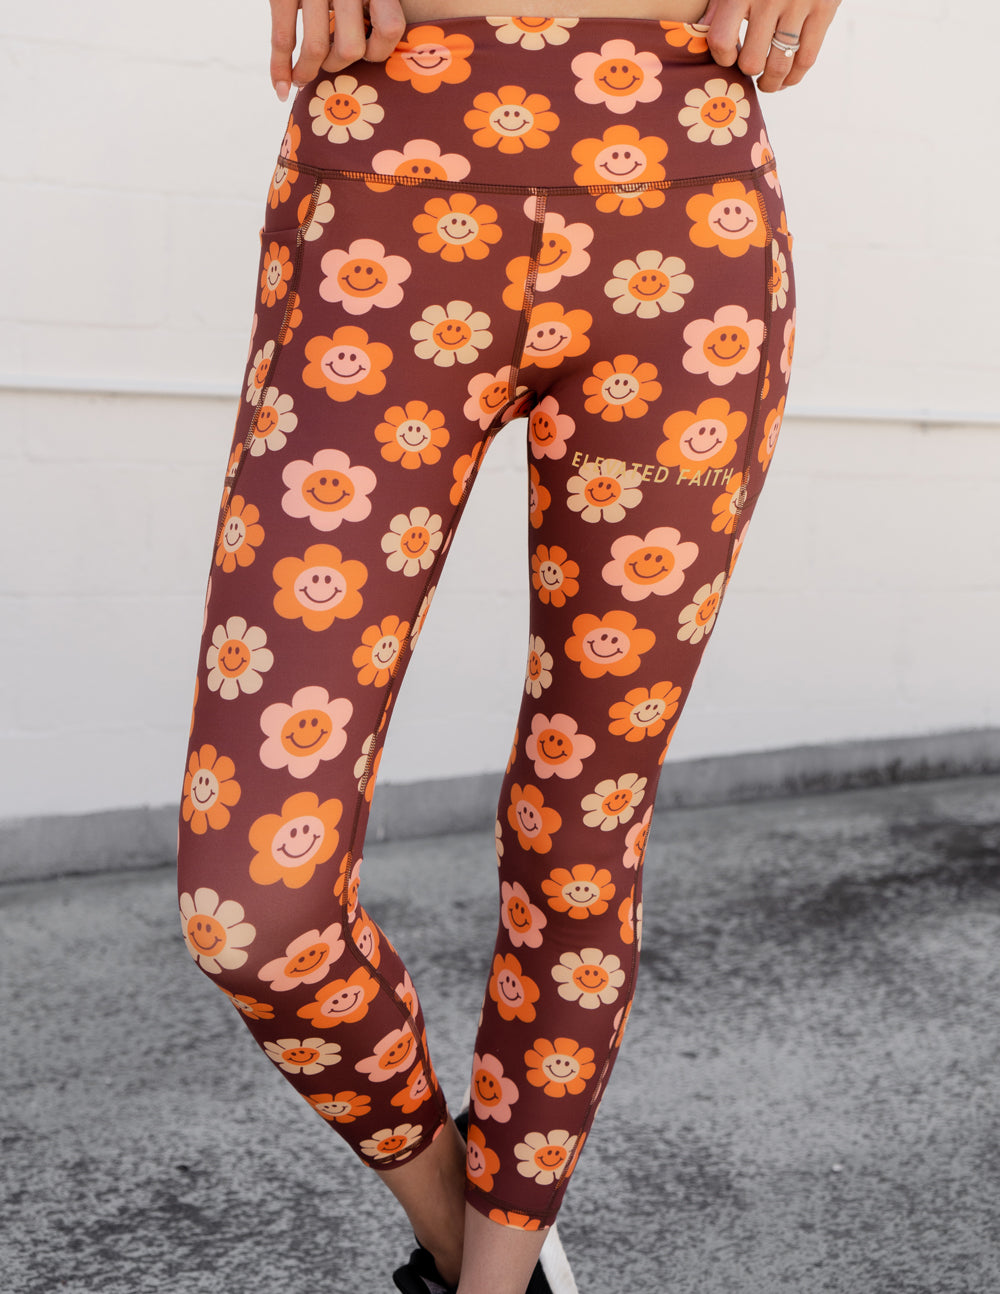 Decorative Stitch Crossover Leggings - Orange